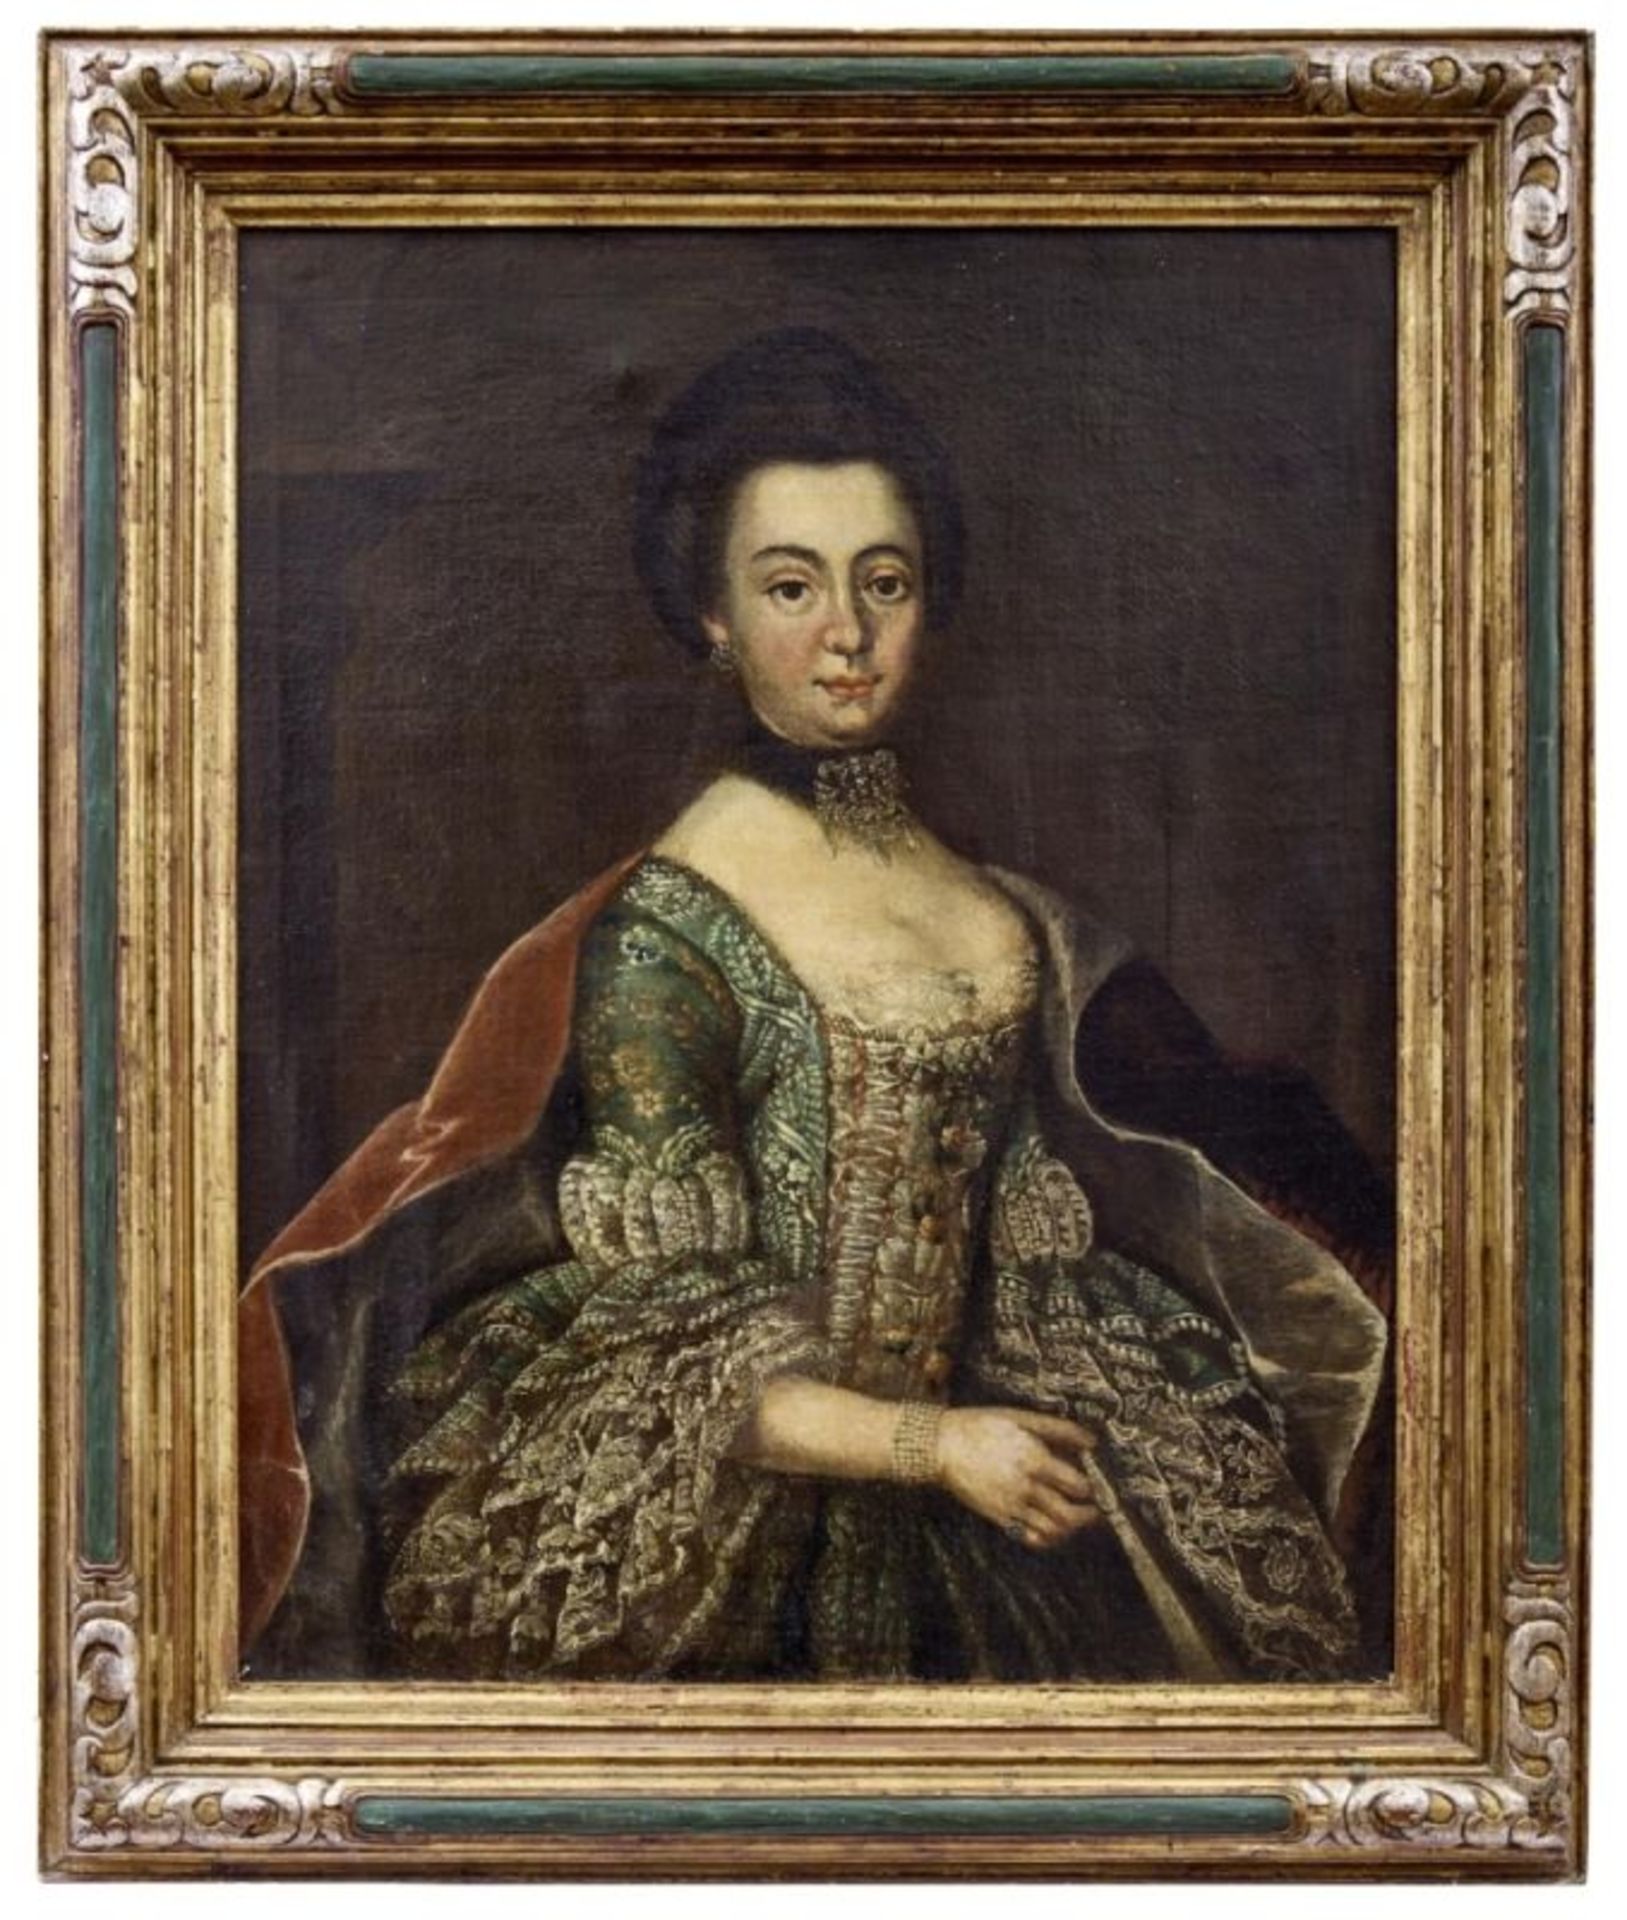 Bildnis einer adeligen Dame, 18. Jh.